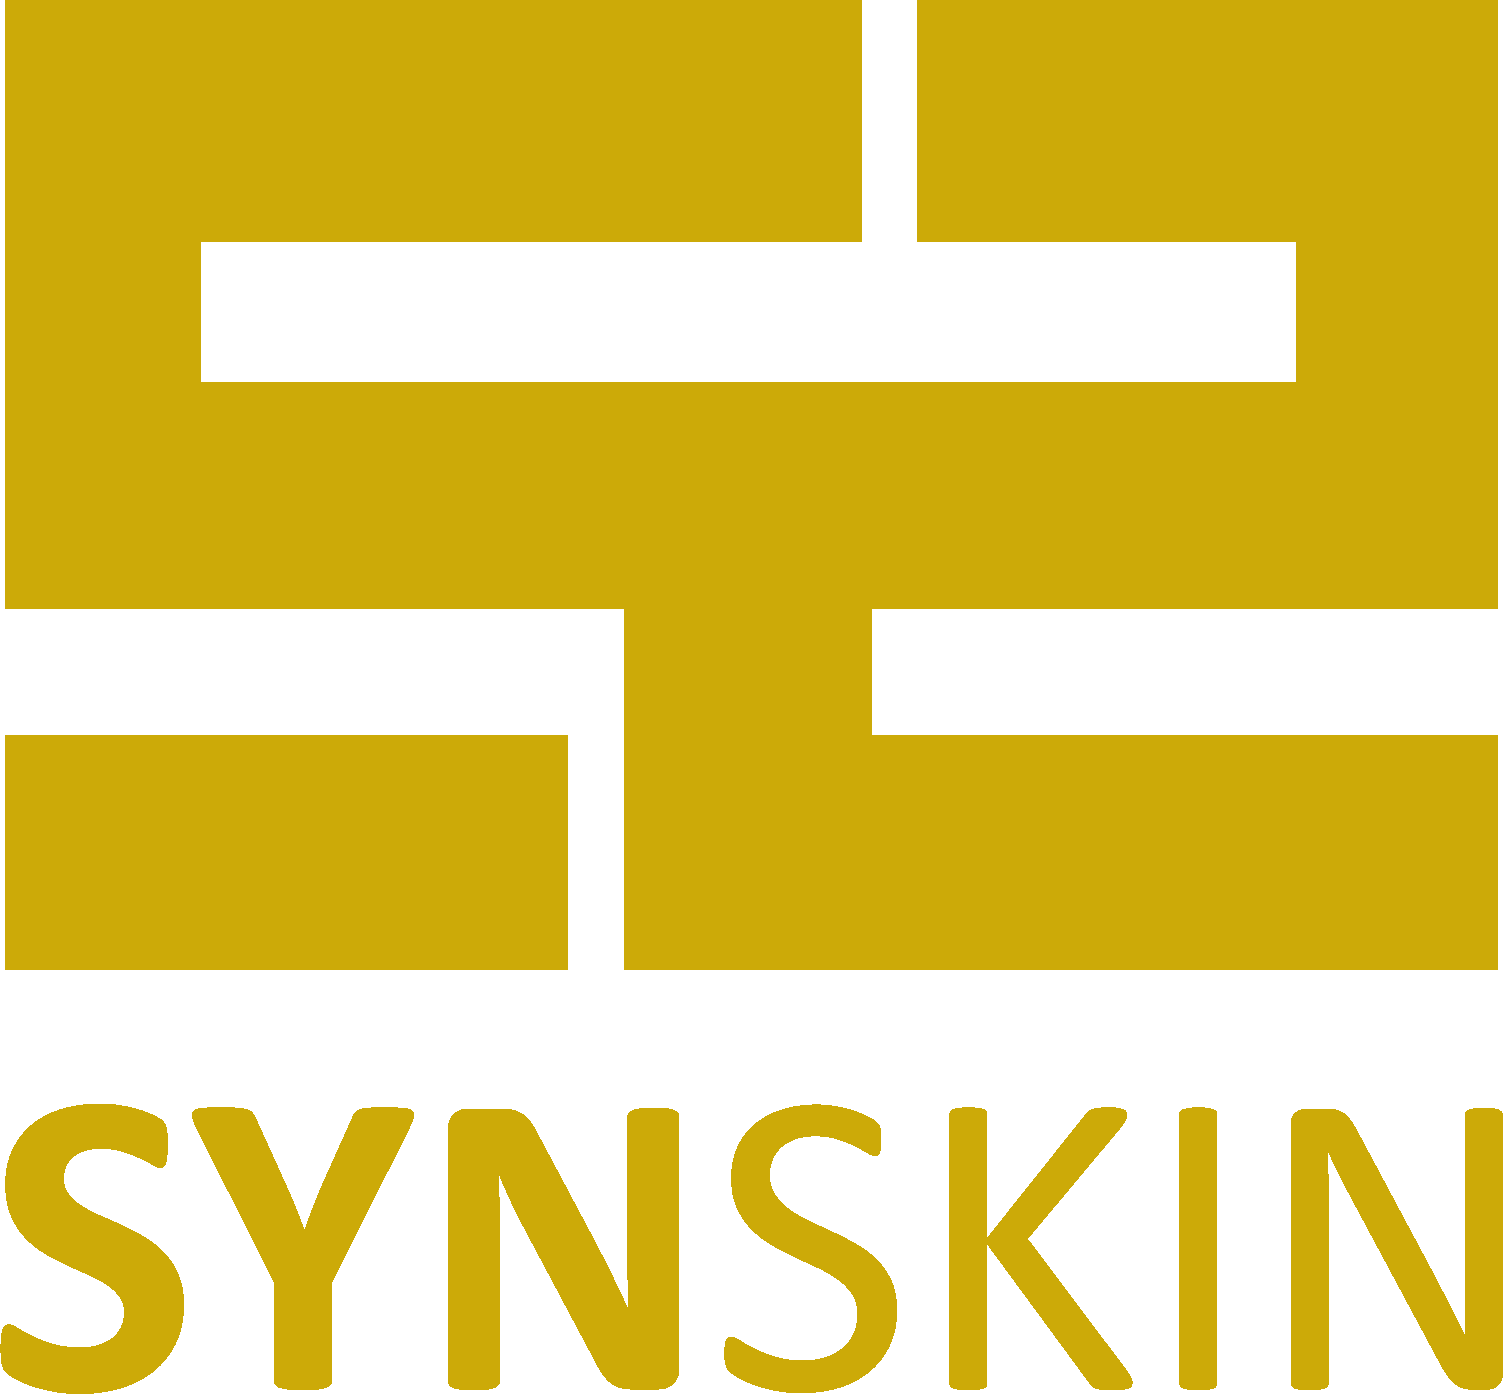 ساین اسکین (Synskin)